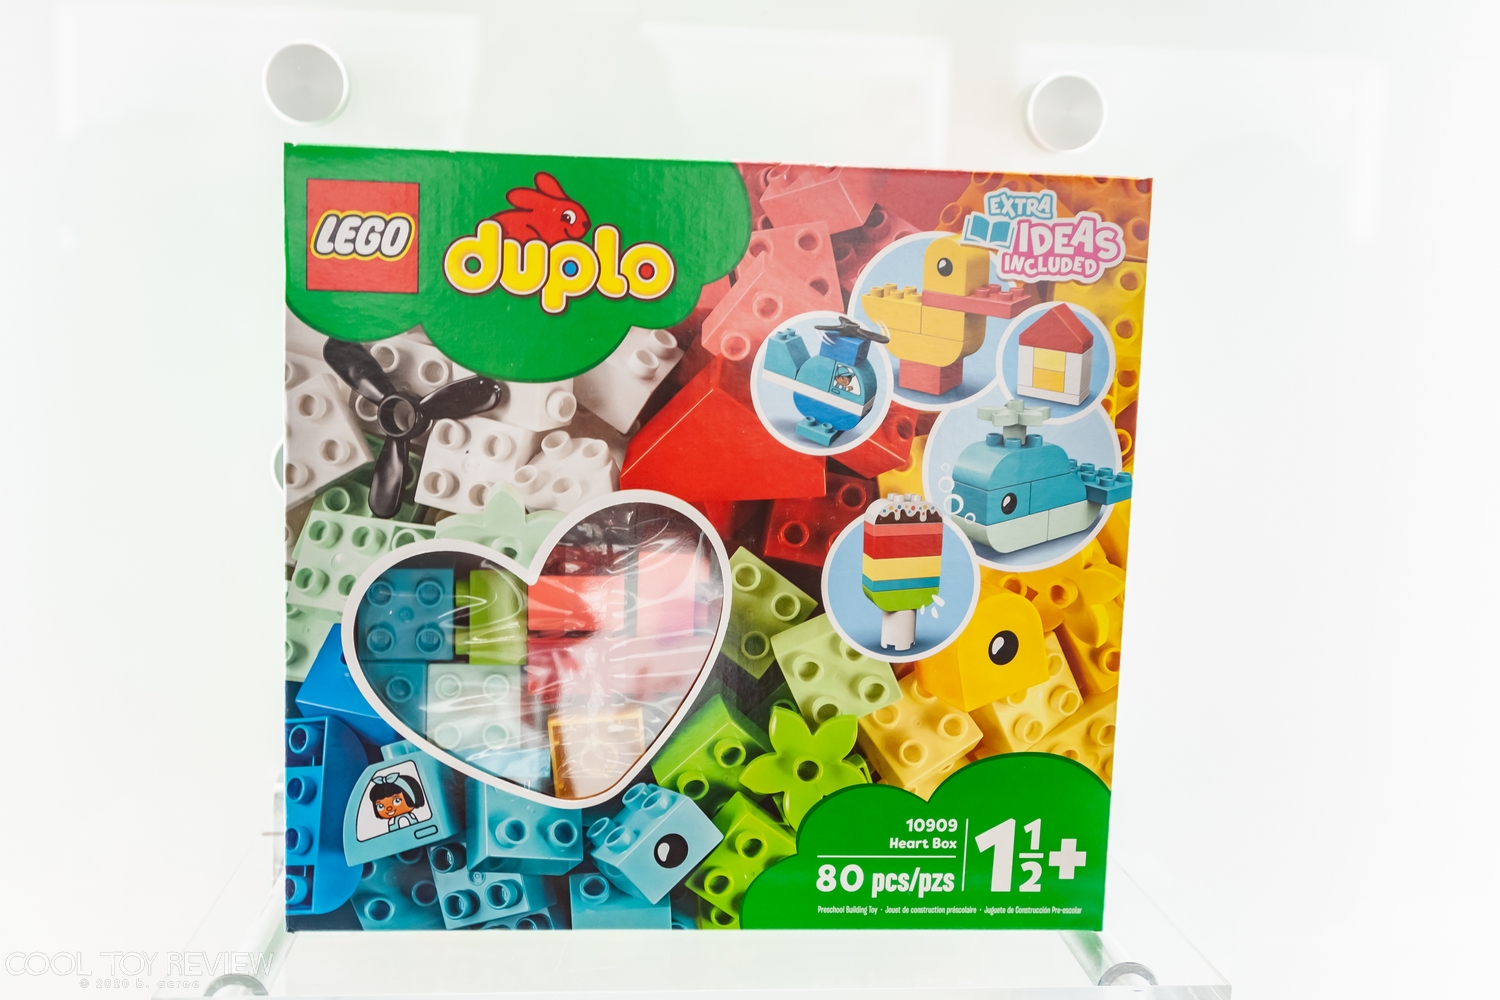 2020-Toy-Fair-LEGO-220.jpg